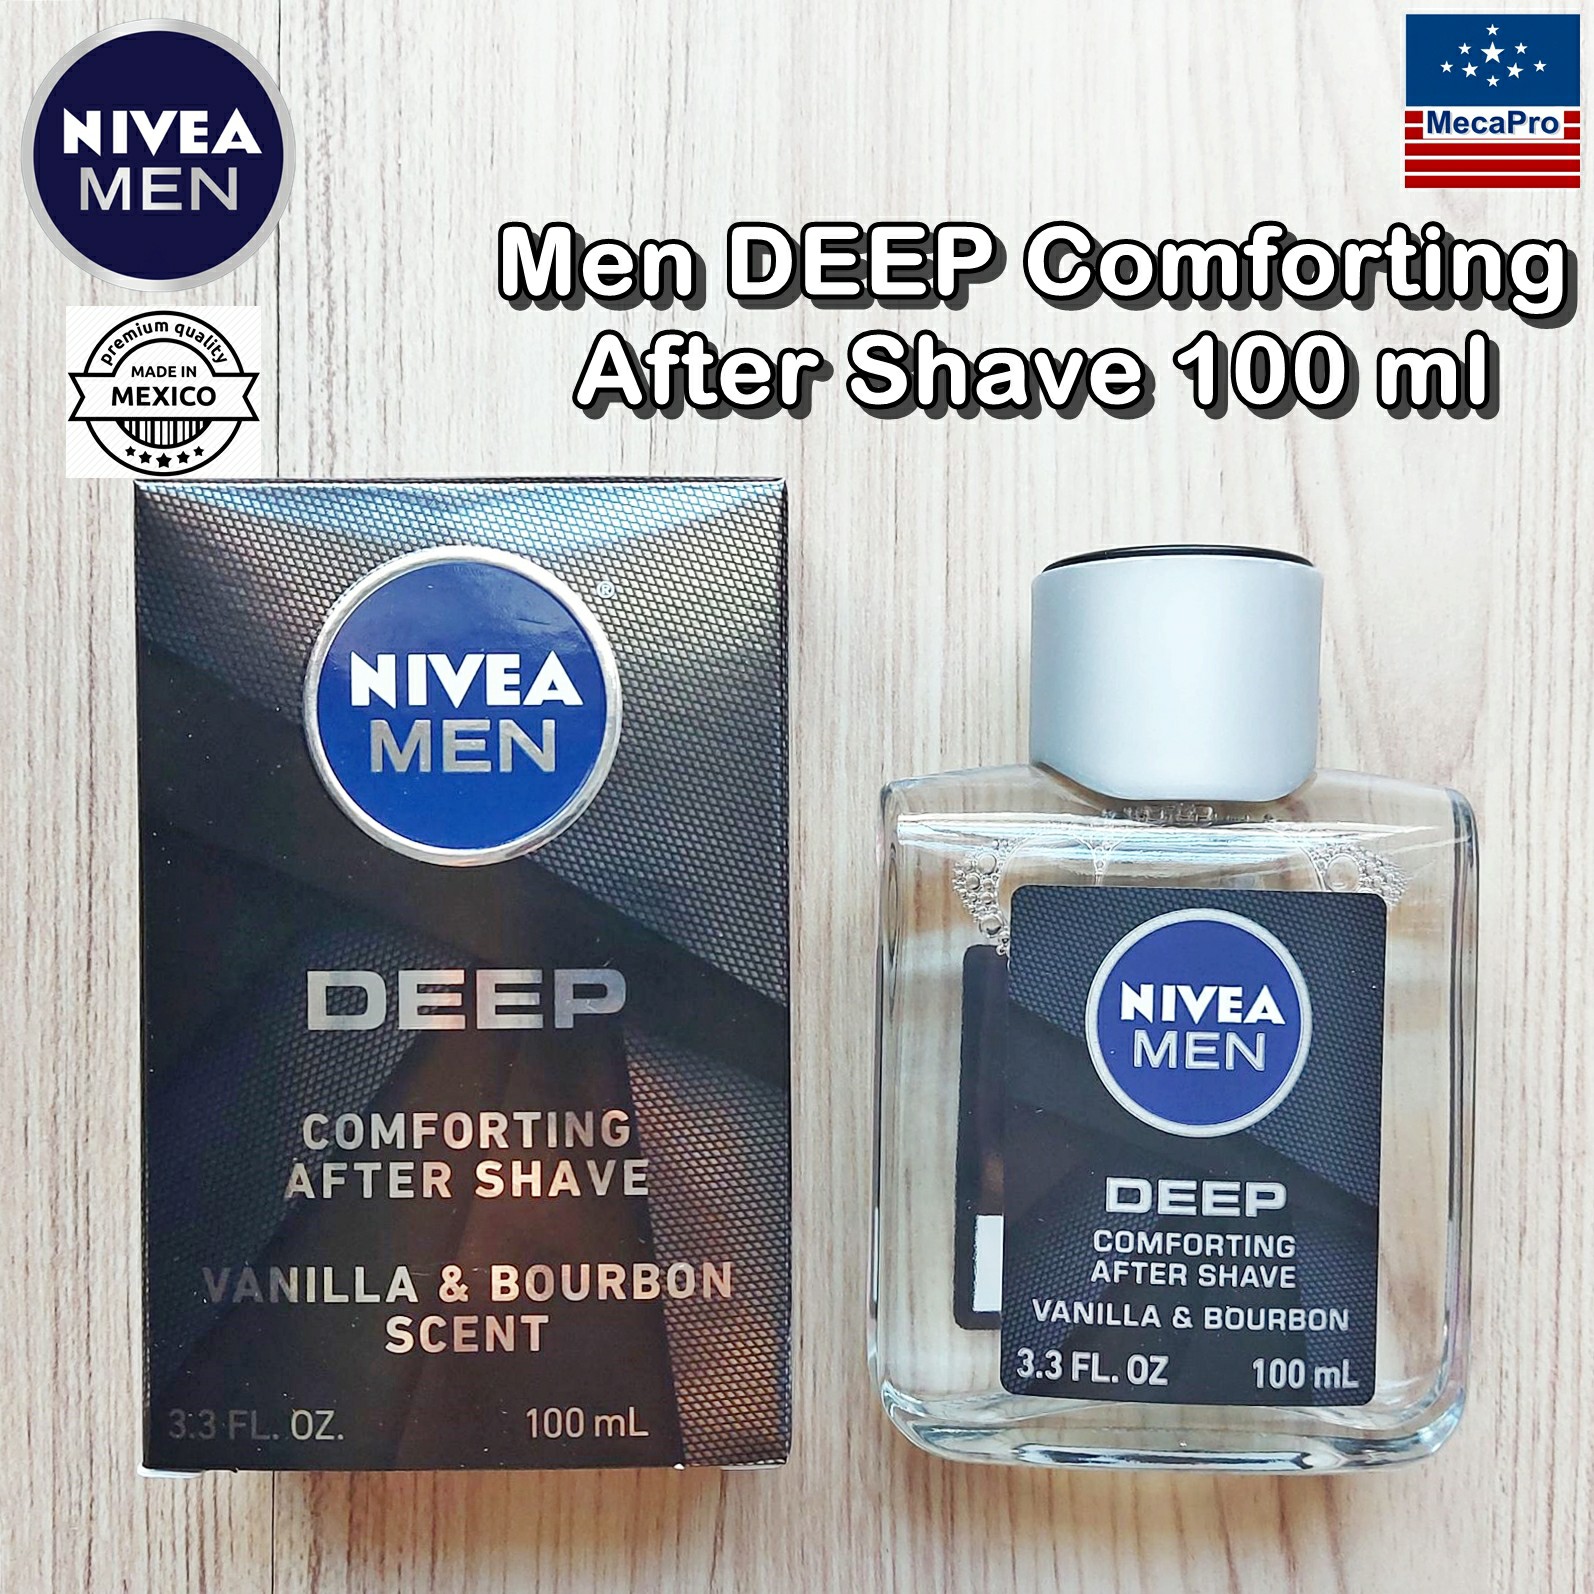 NIVEA® Men DEEP Comforting After Shave 100 ml นีเวีย สำหรับผู้ชาย ผลิตภัณฑ์บำรุงผิวหน้า หลังการโกนหนวด